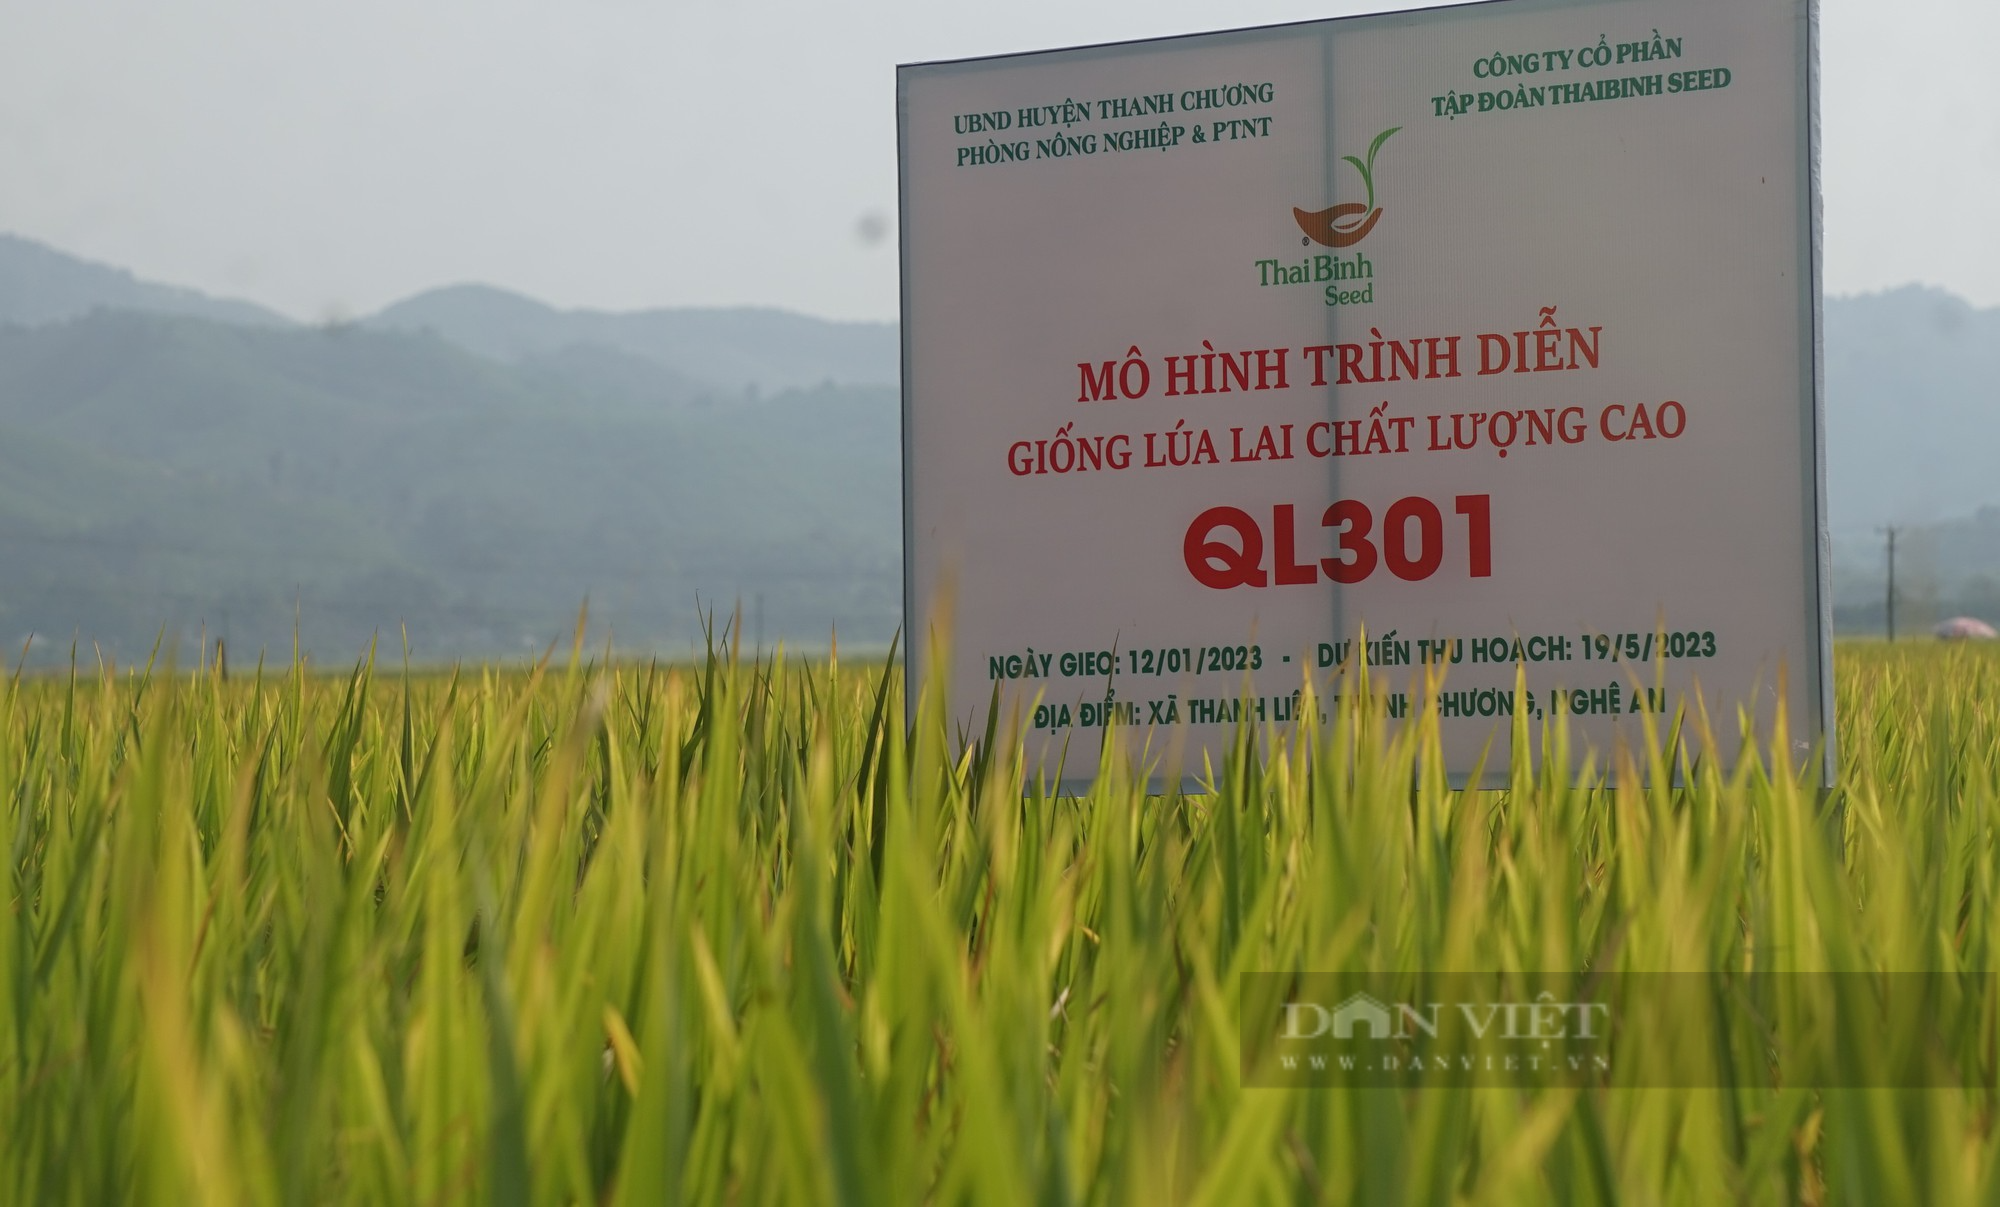 Bộ giống lúa của ThaiBinh Seed khẳng định chất lượng, cho năng suất vượt trội trên những cánh đồng Nghệ An - Ảnh 4.